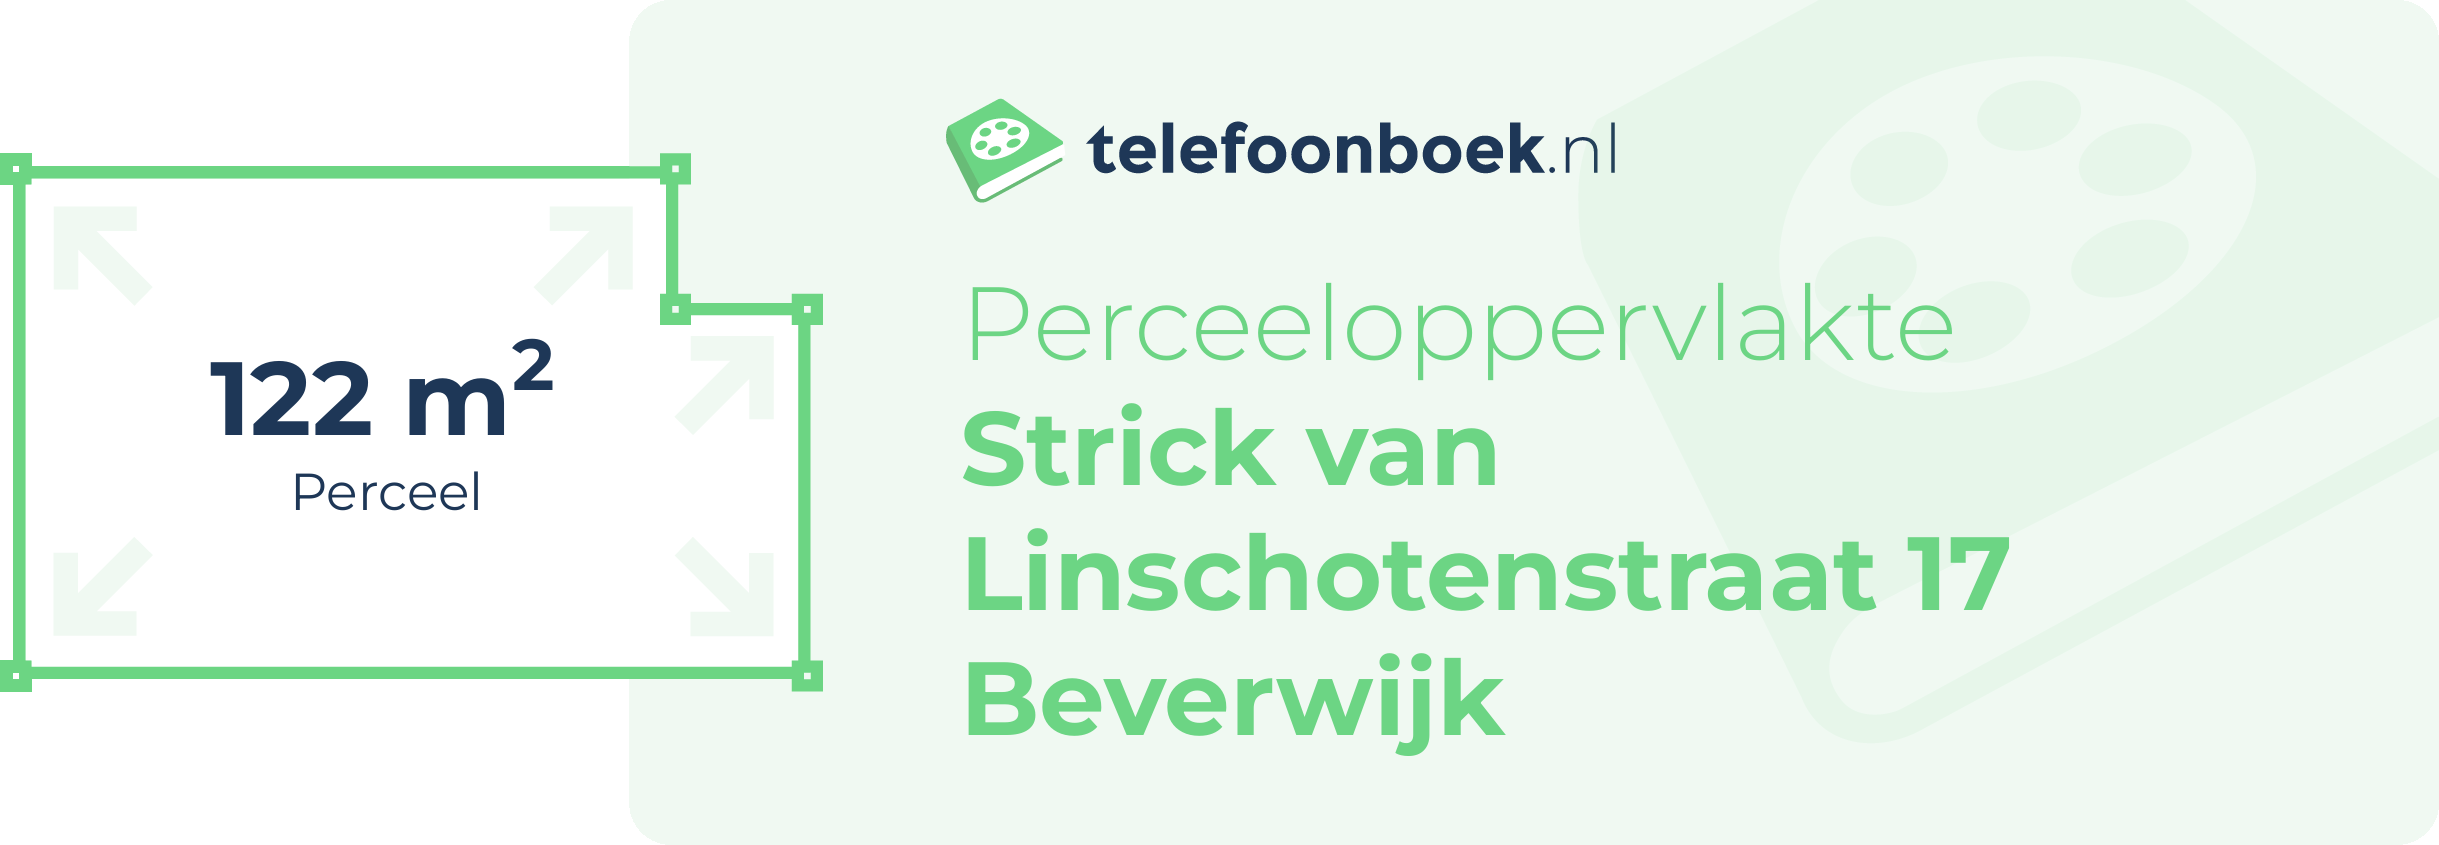 Perceeloppervlakte Strick Van Linschotenstraat 17 Beverwijk